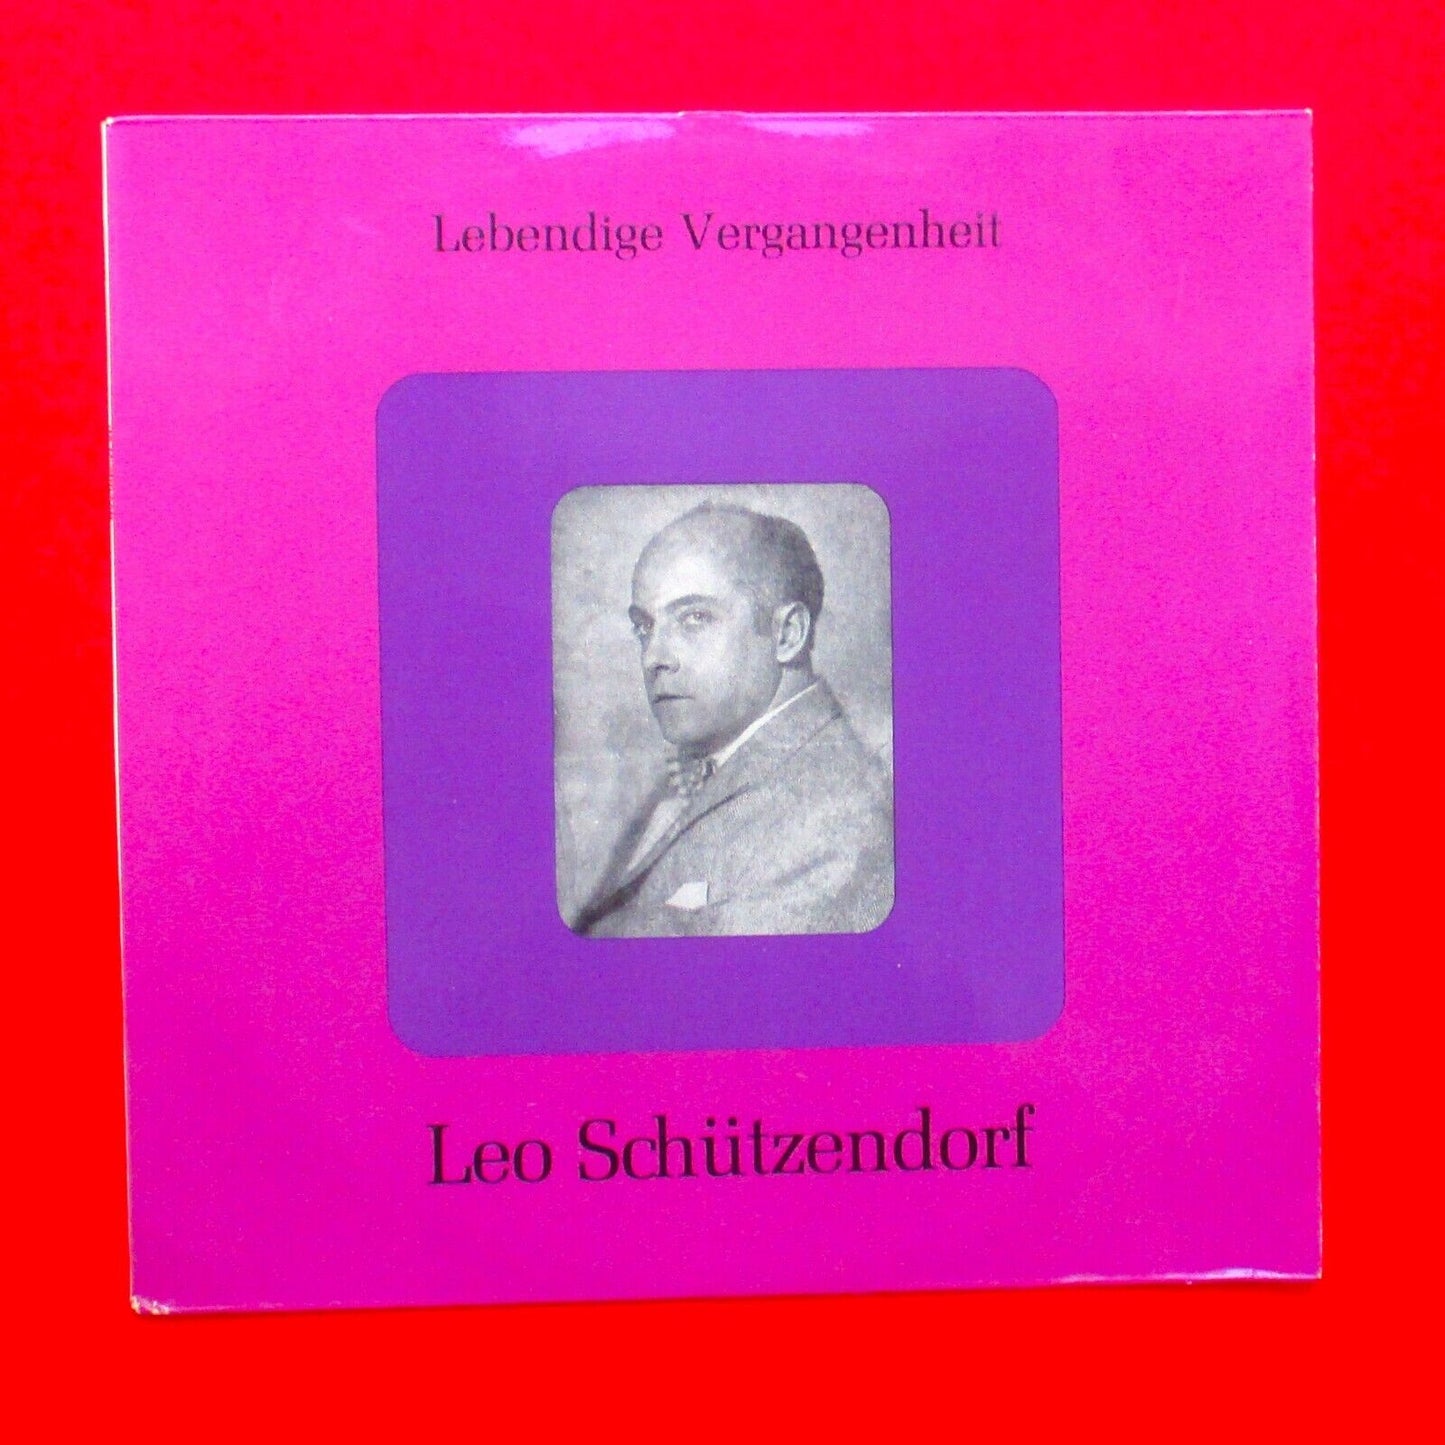 Leo Schützendorf ‎Living Past Vinyl Album LP Classical Opera